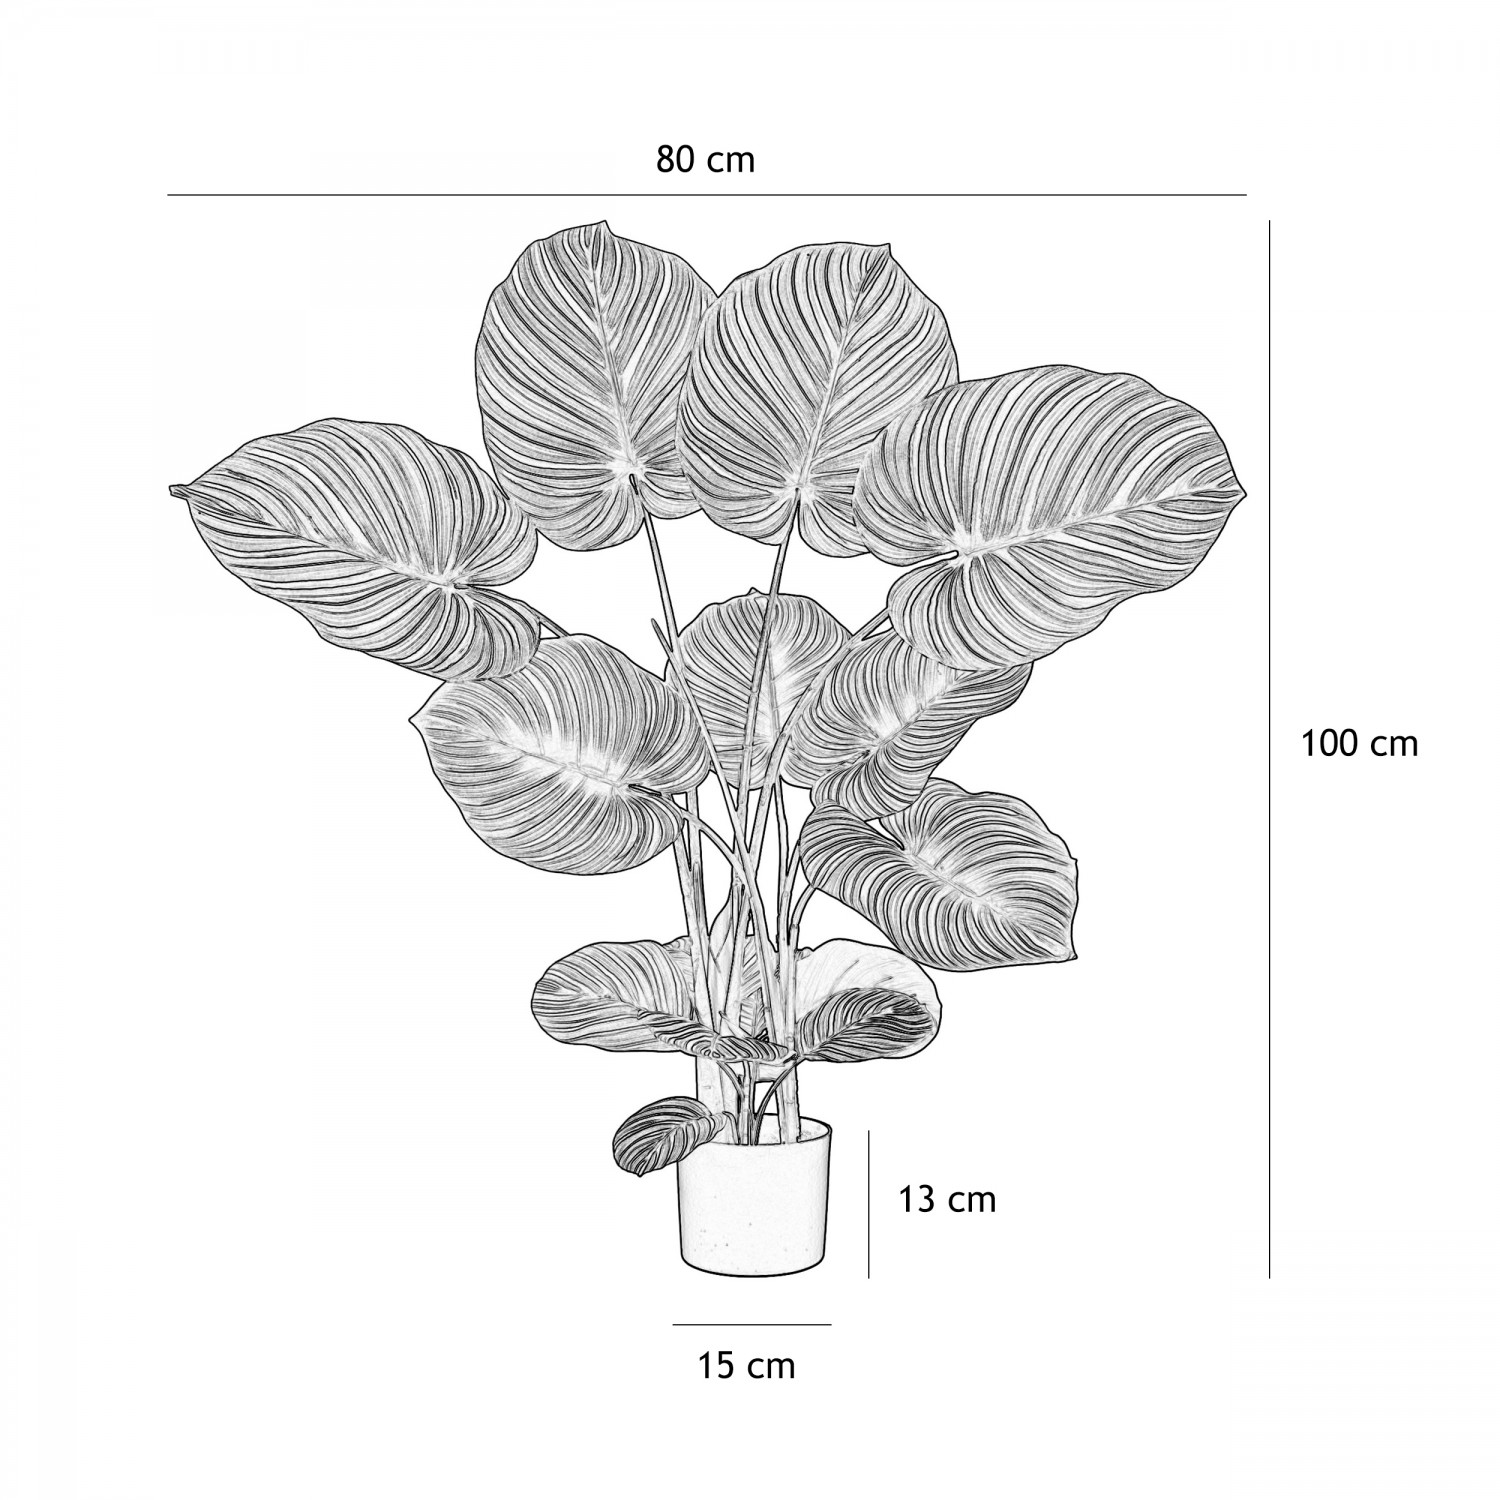 Plante verte calathea artificiel 100cm graphique avec les dimensions